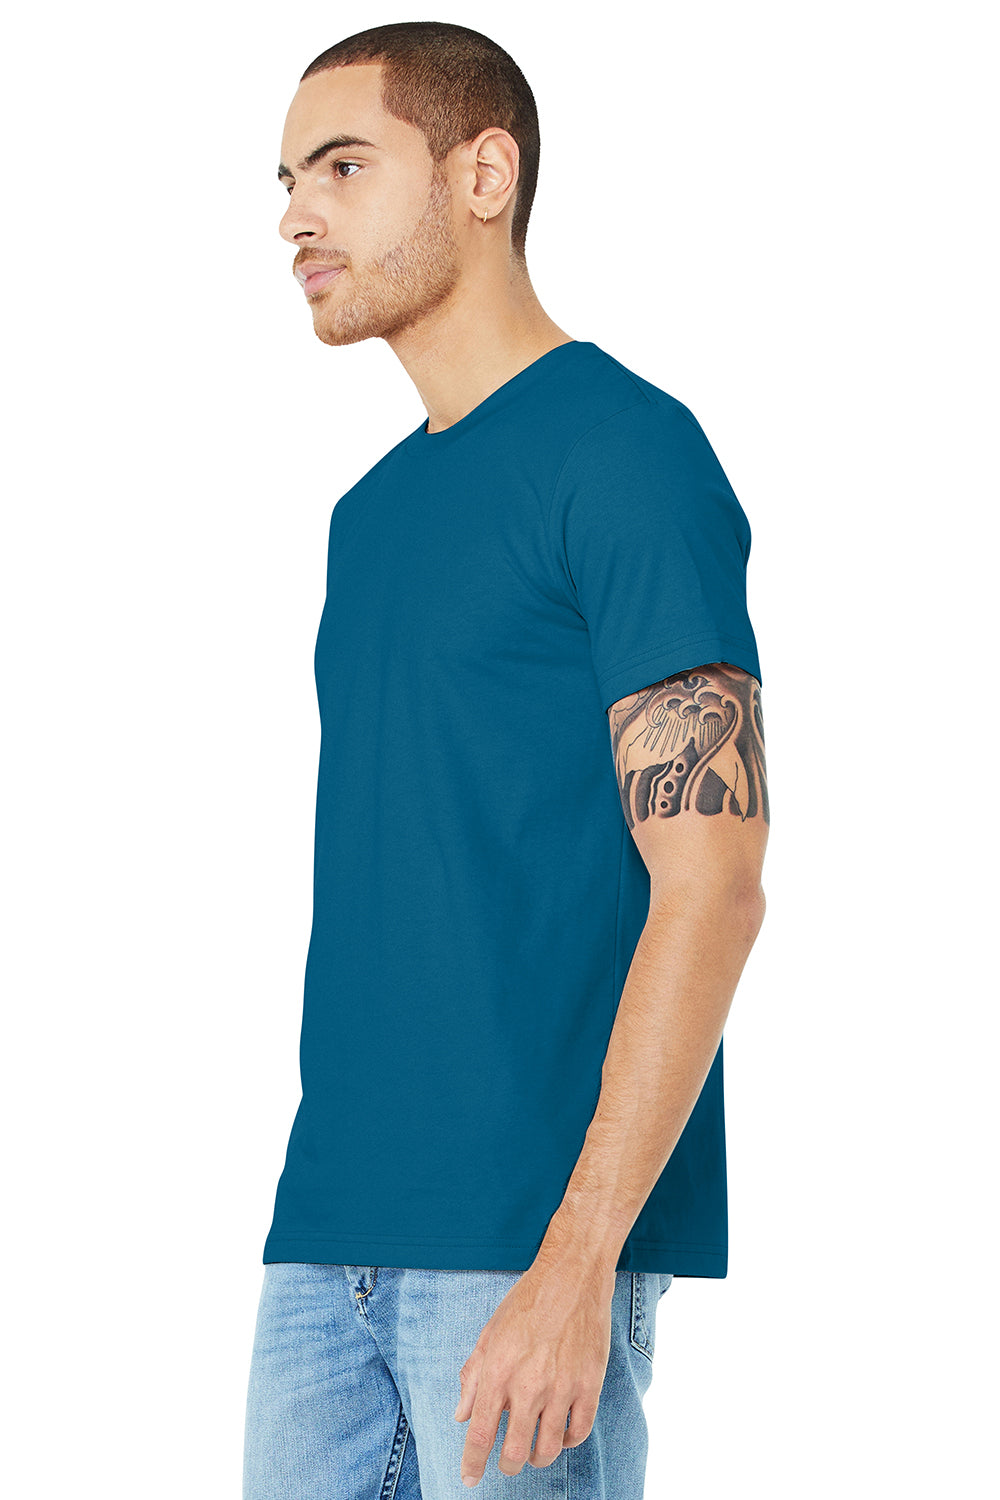 Bella + Canvas BC3001/3001C Mens Jersey Short Sleeve Crewneck T-Shirt Deep Teal Blue Model 3Q